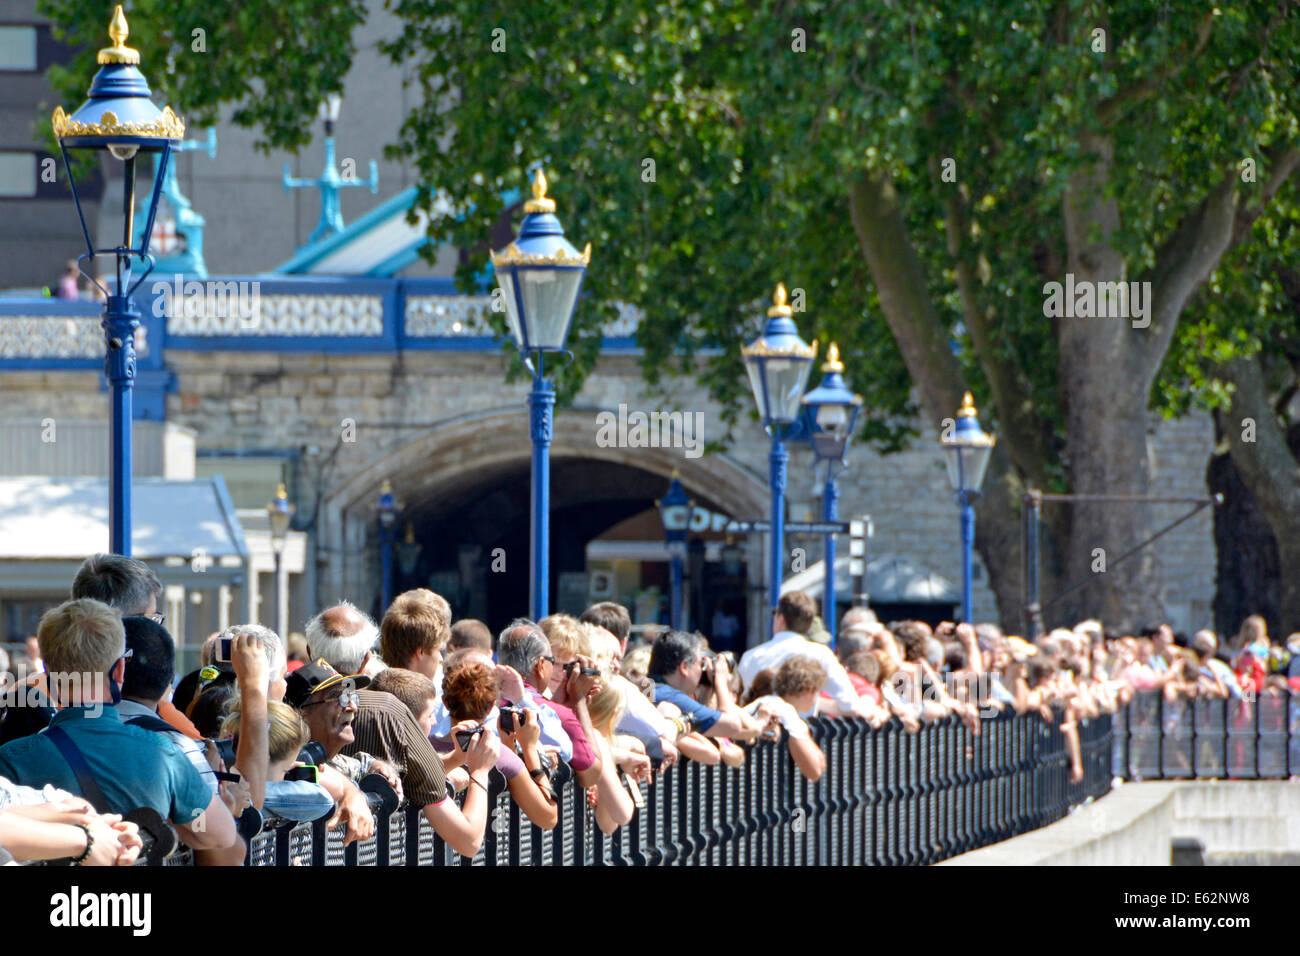 Alter junge Gesicht unter der Masse der Touristen entlang der Flussufer Geländer zu schnappen, die Anhebung der Tower Bridge für ein Kreuzfahrtschiff Stockfoto